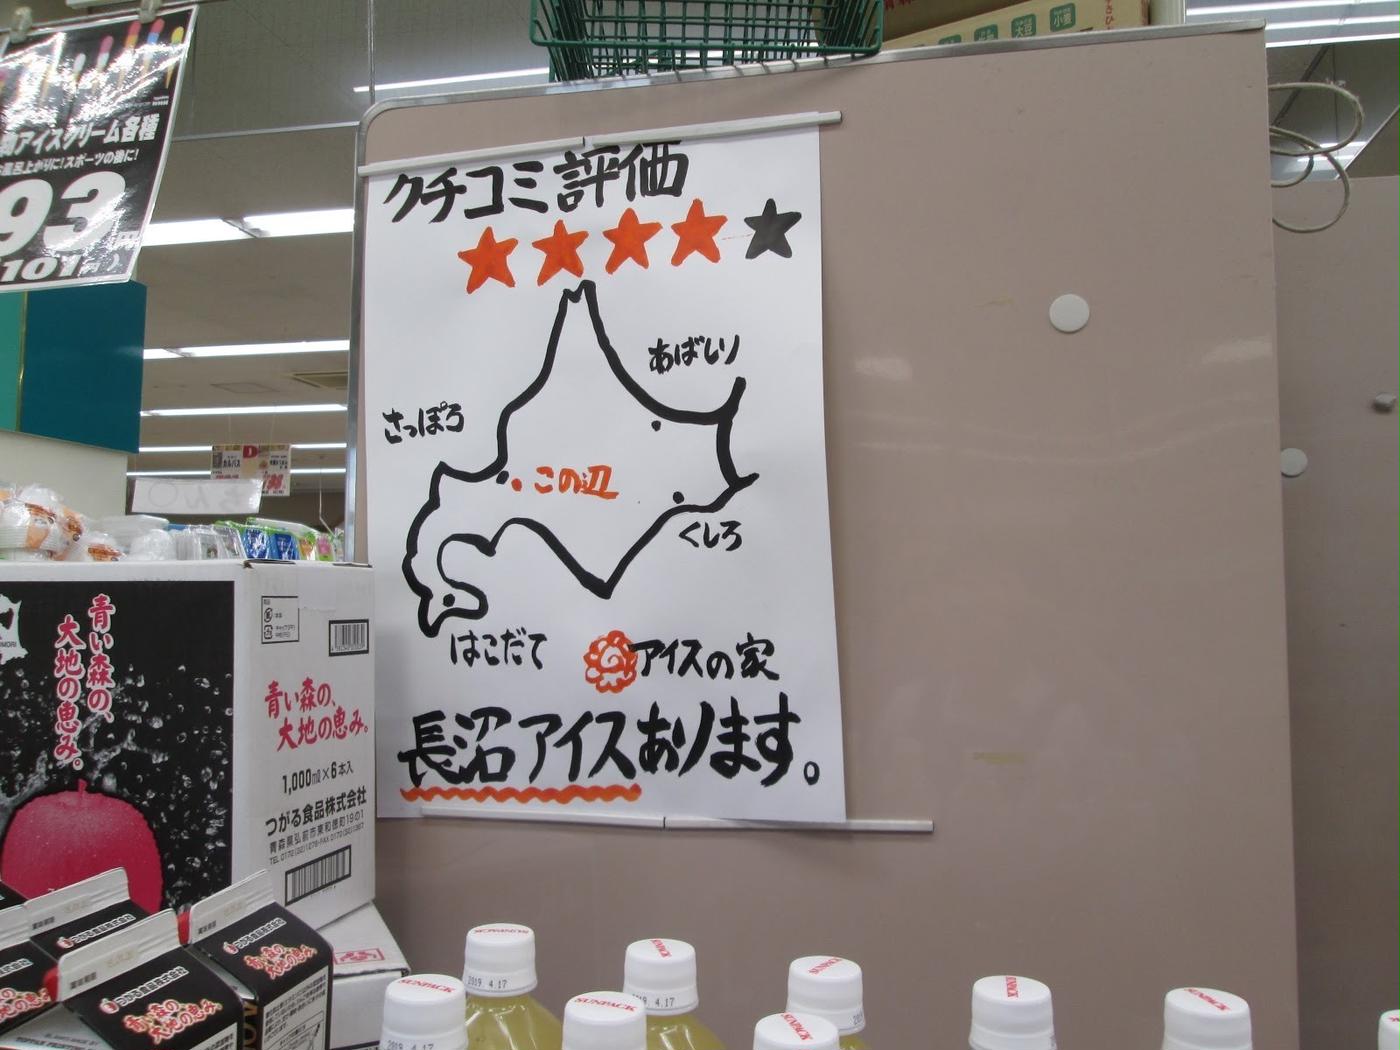 くすっと笑えるPOP連発! 青森県「ヤマヨ十和田店」での買い物が楽しすぎ - トクバイニュース